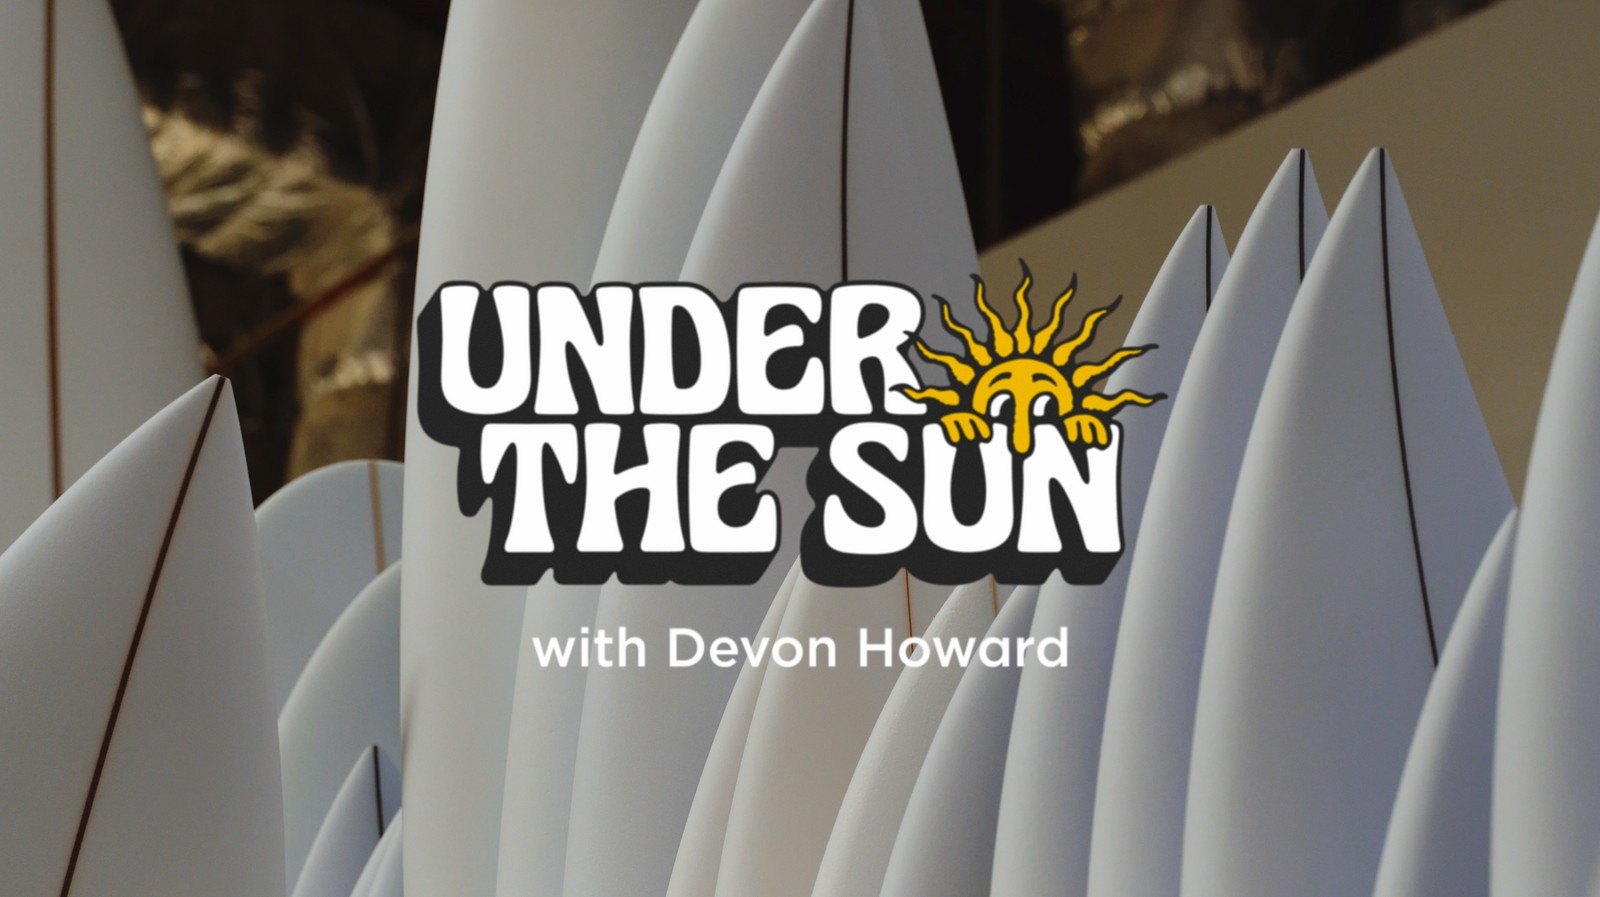 WATCH - Under The Sun with Devon Howard